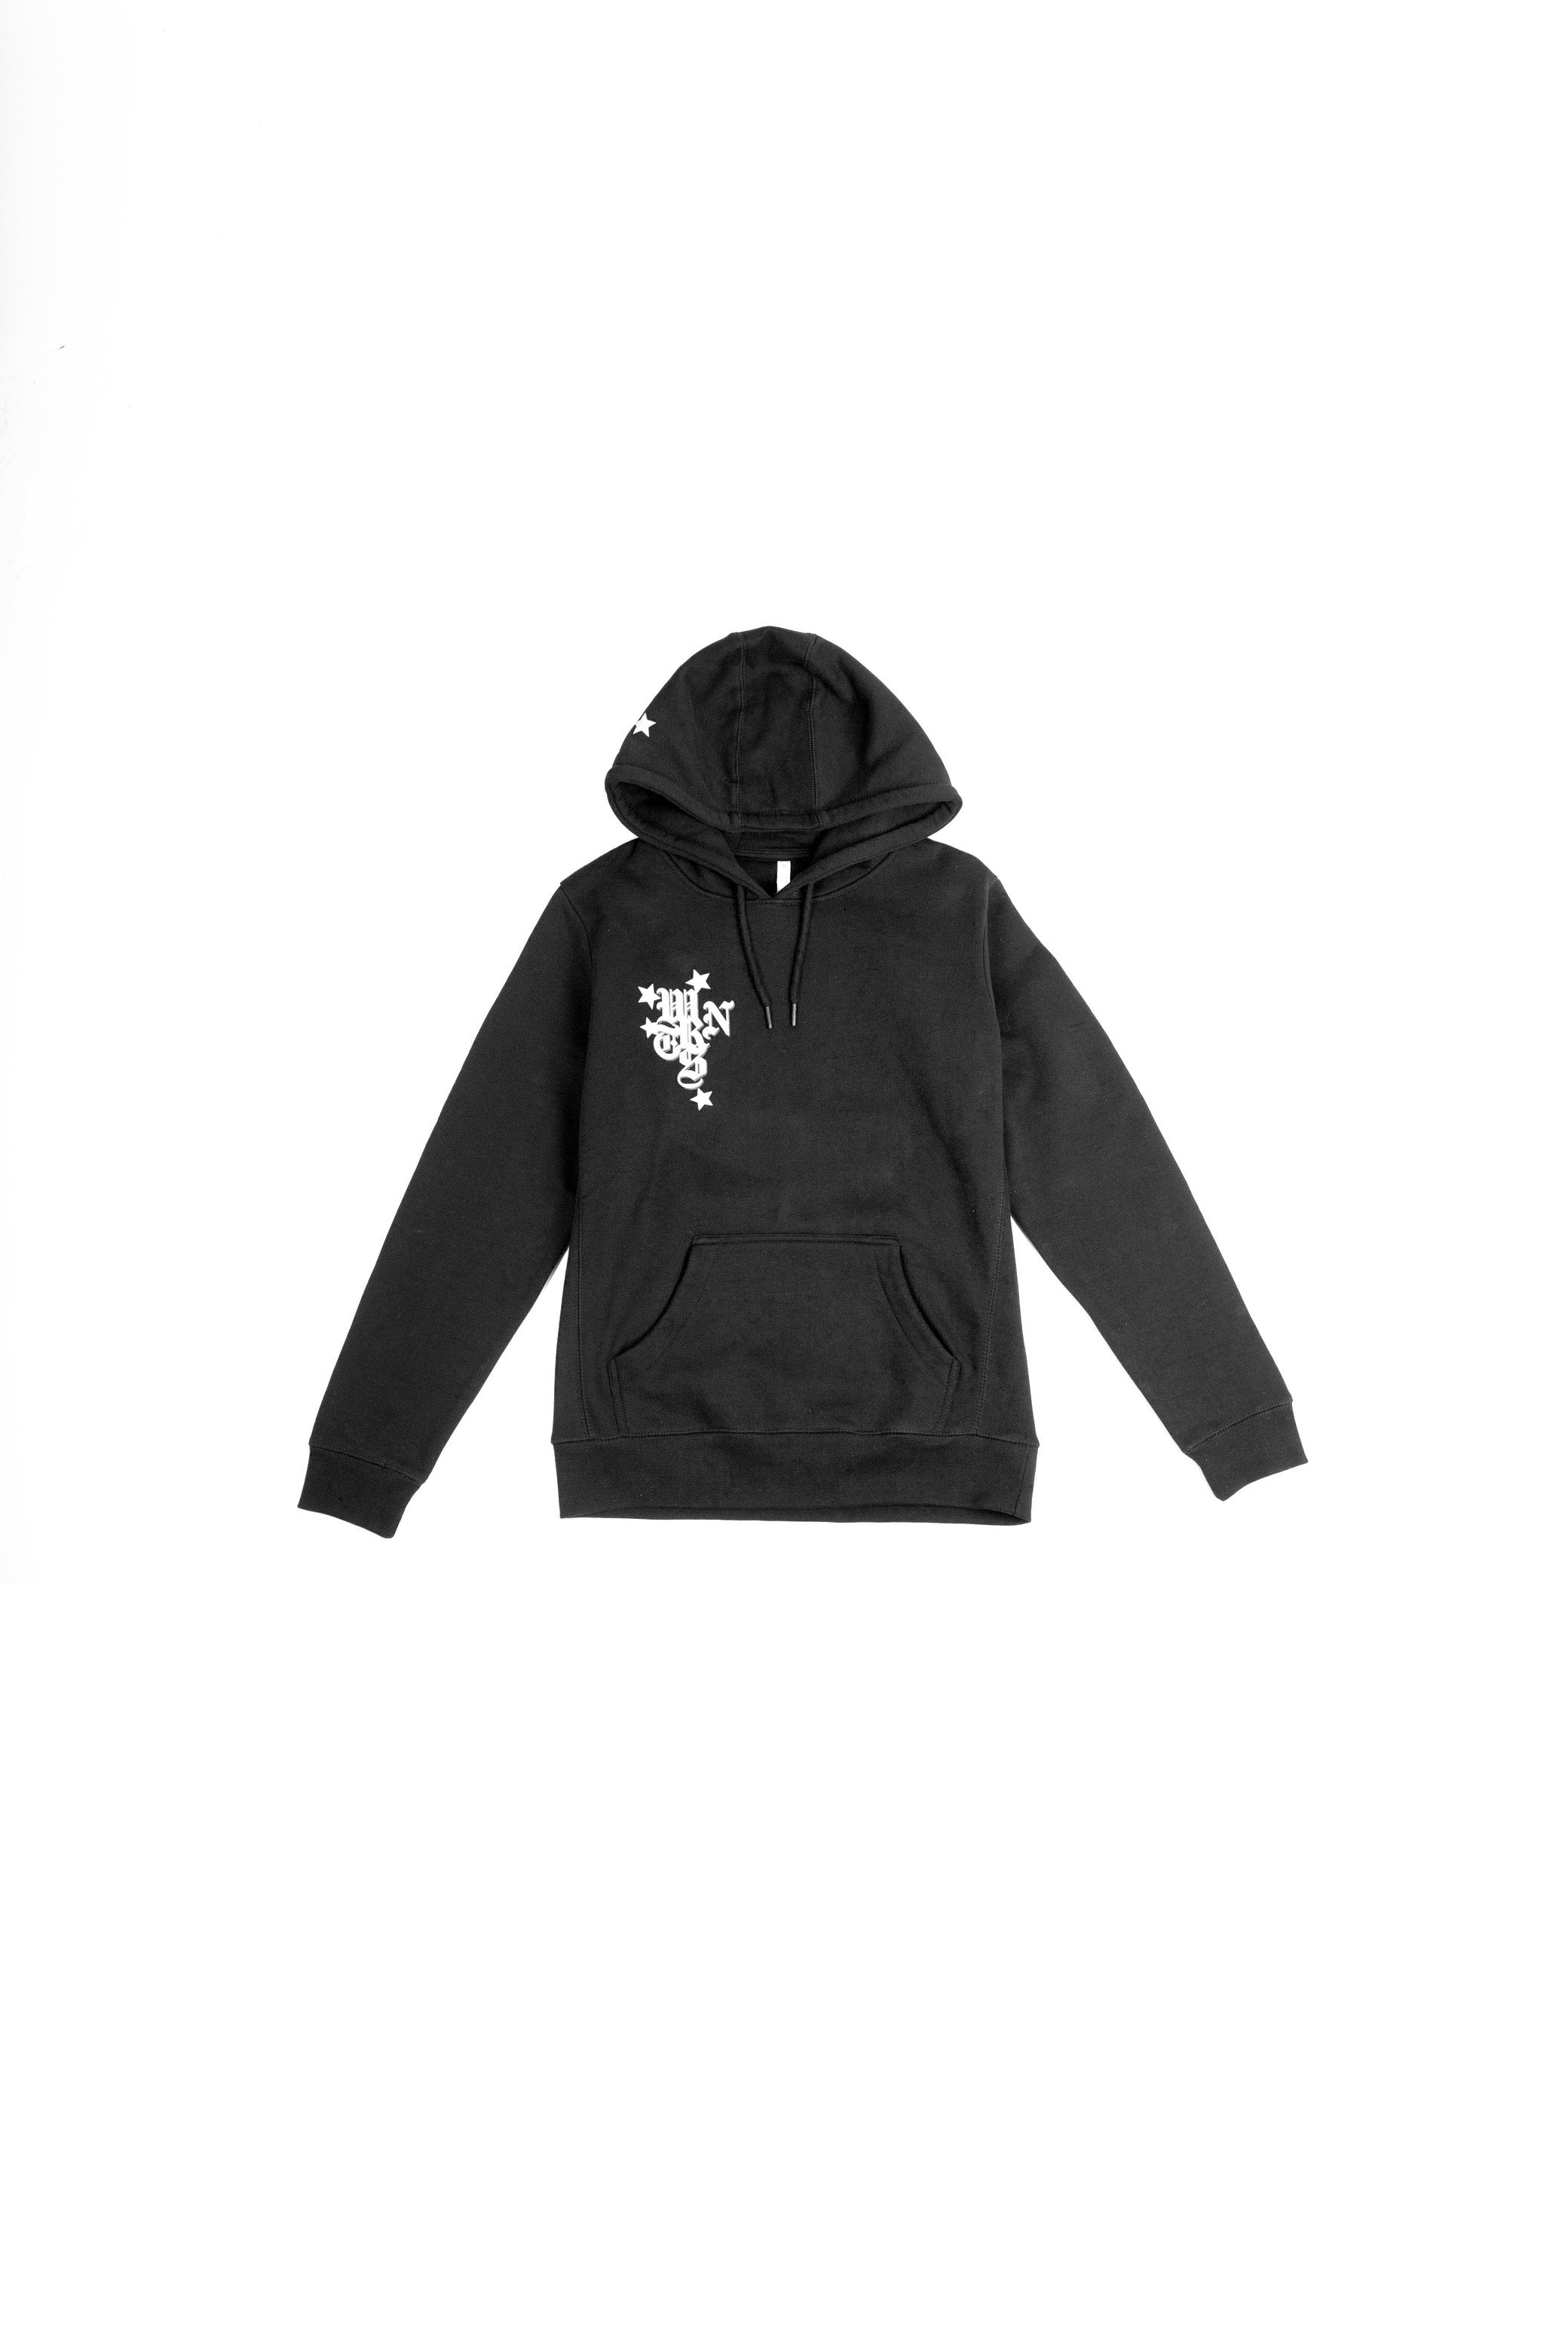 wrnts hoodie in black - Different Streetwear